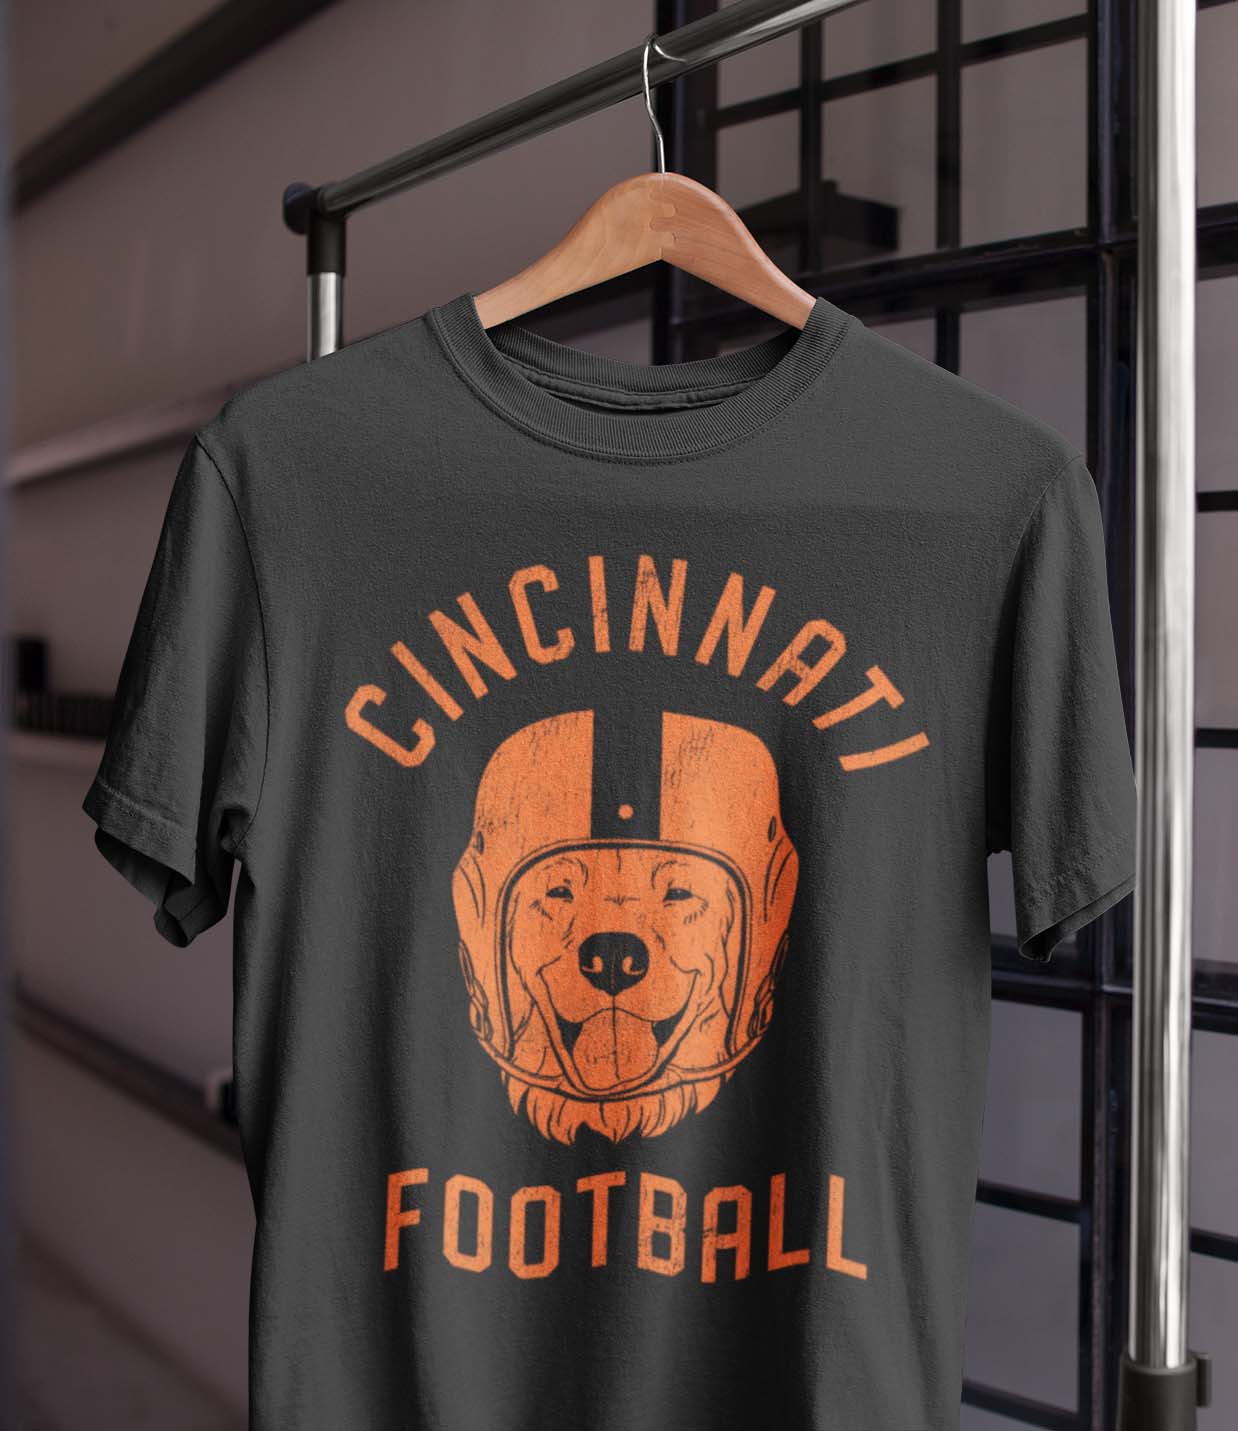 Cincinnati Football Golden Retriever T-Shirt